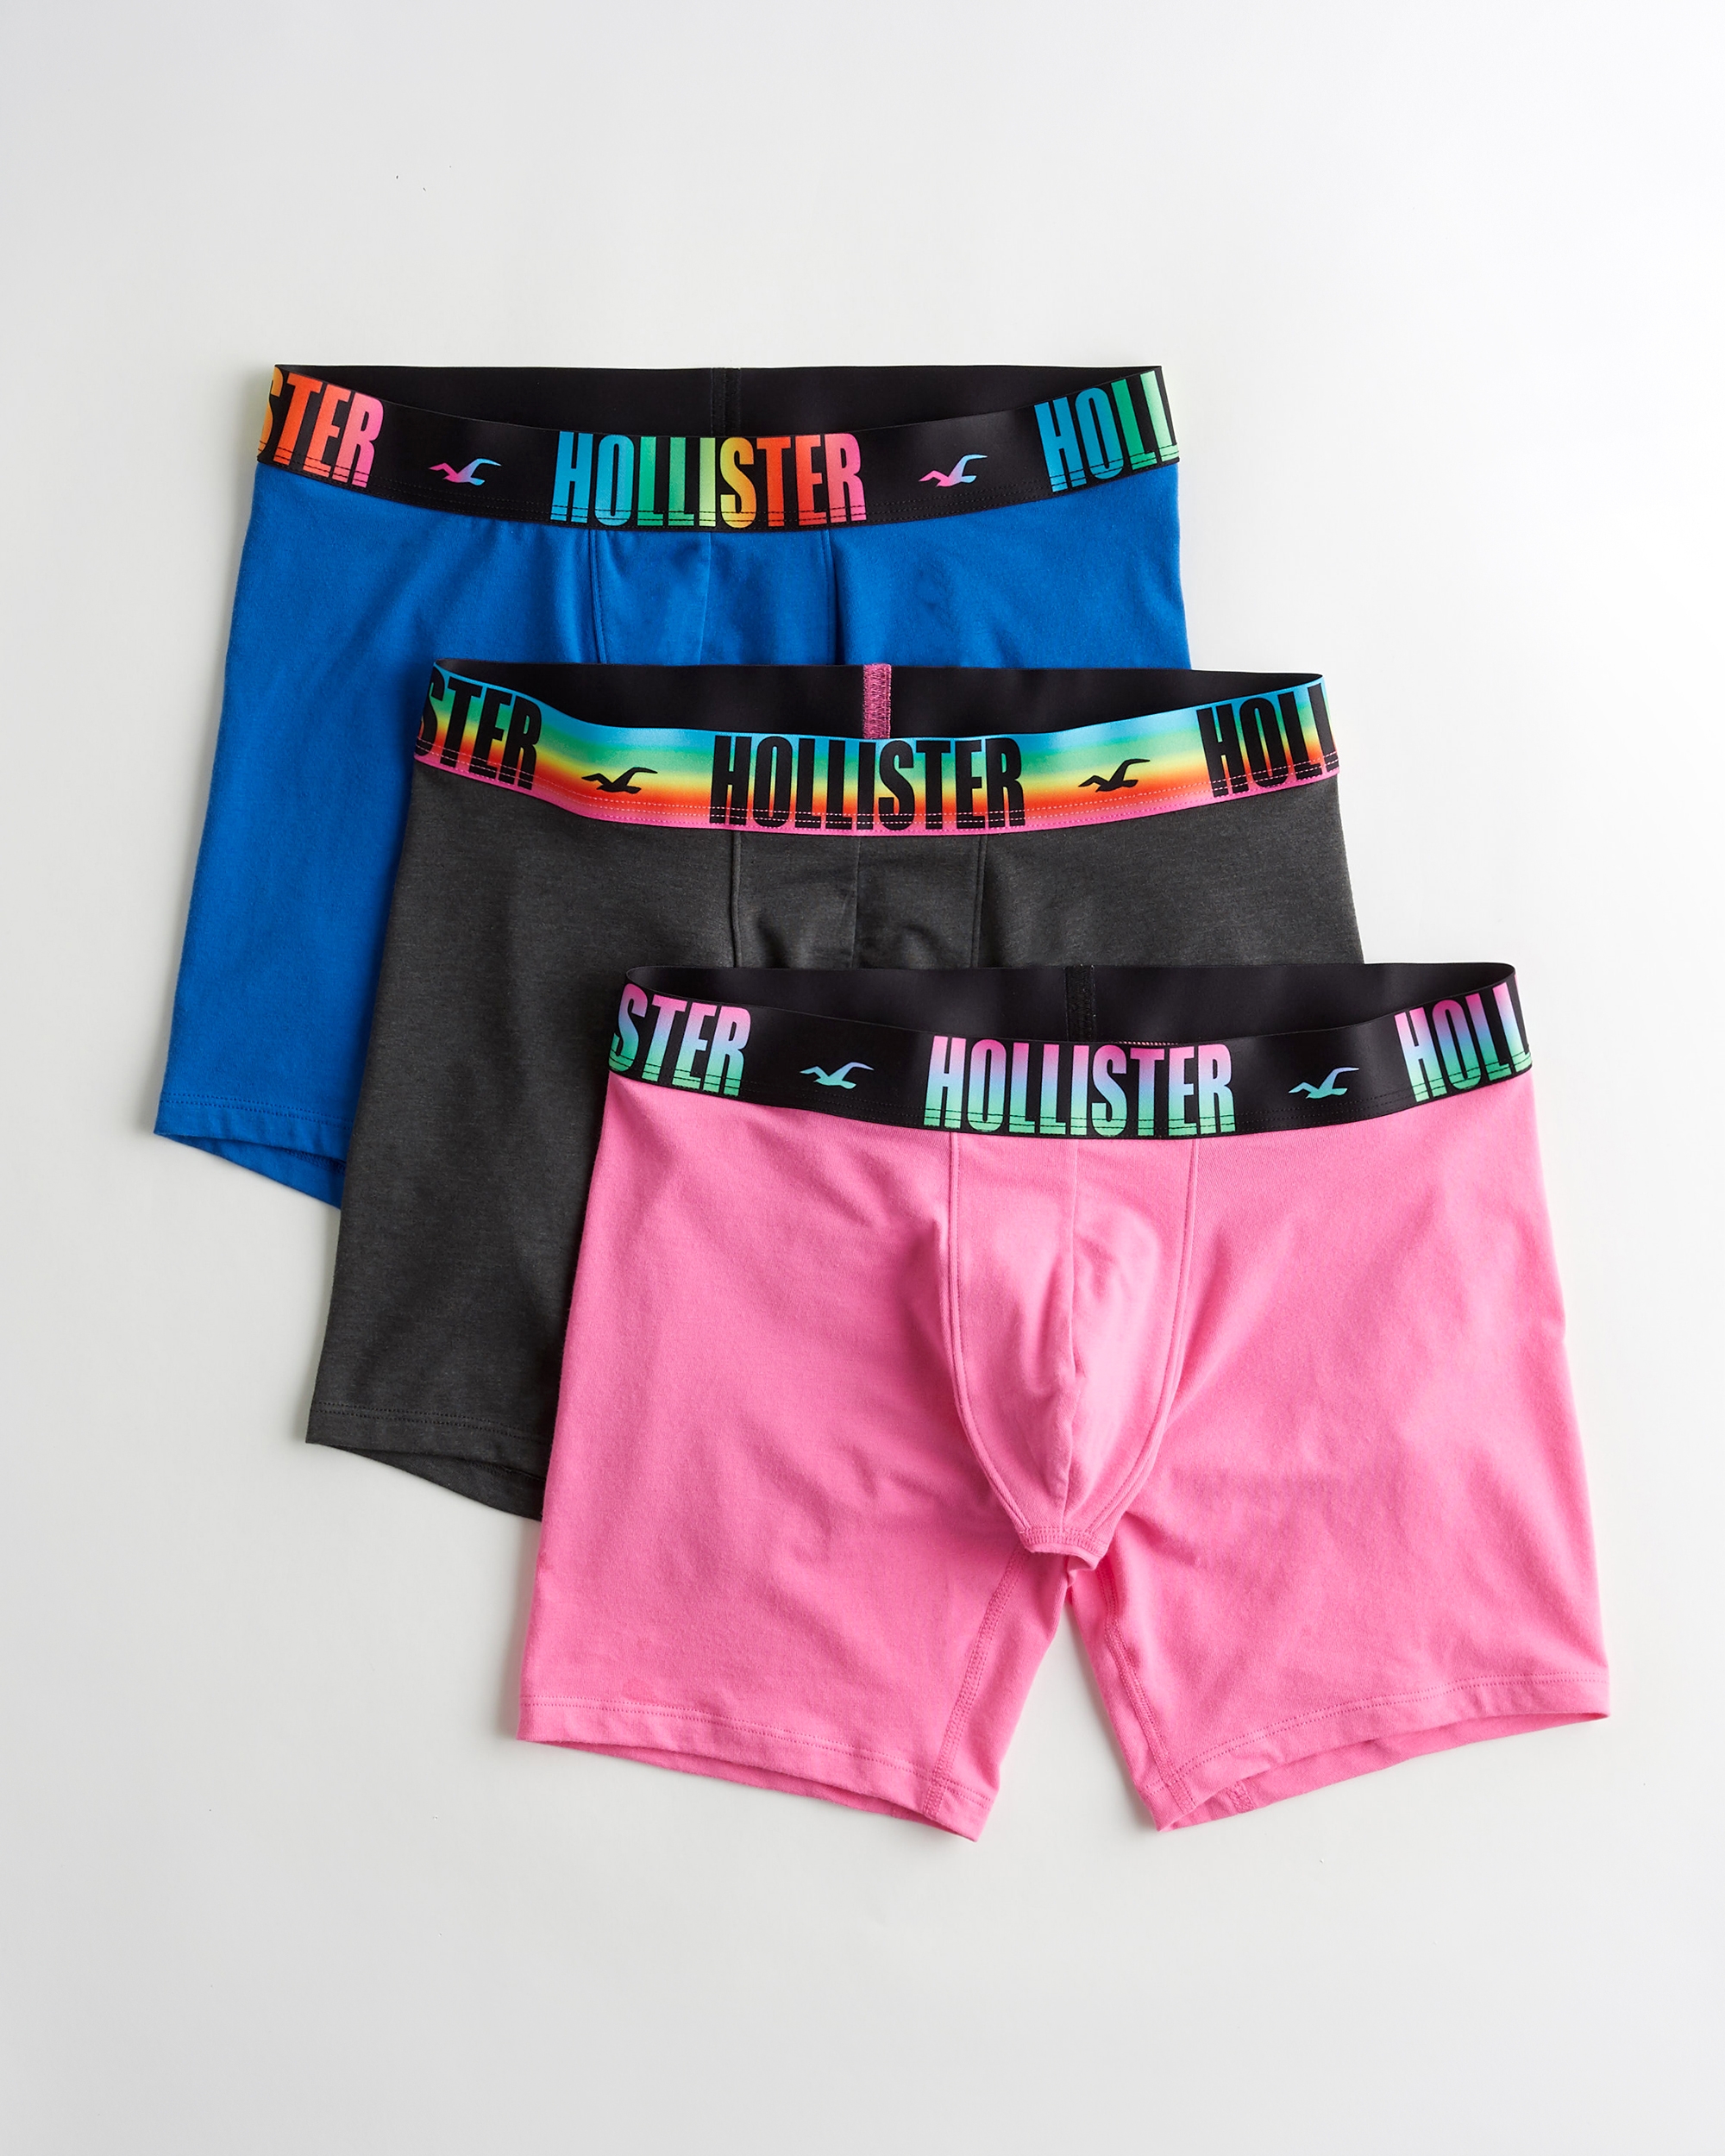 hollister trunks underwear